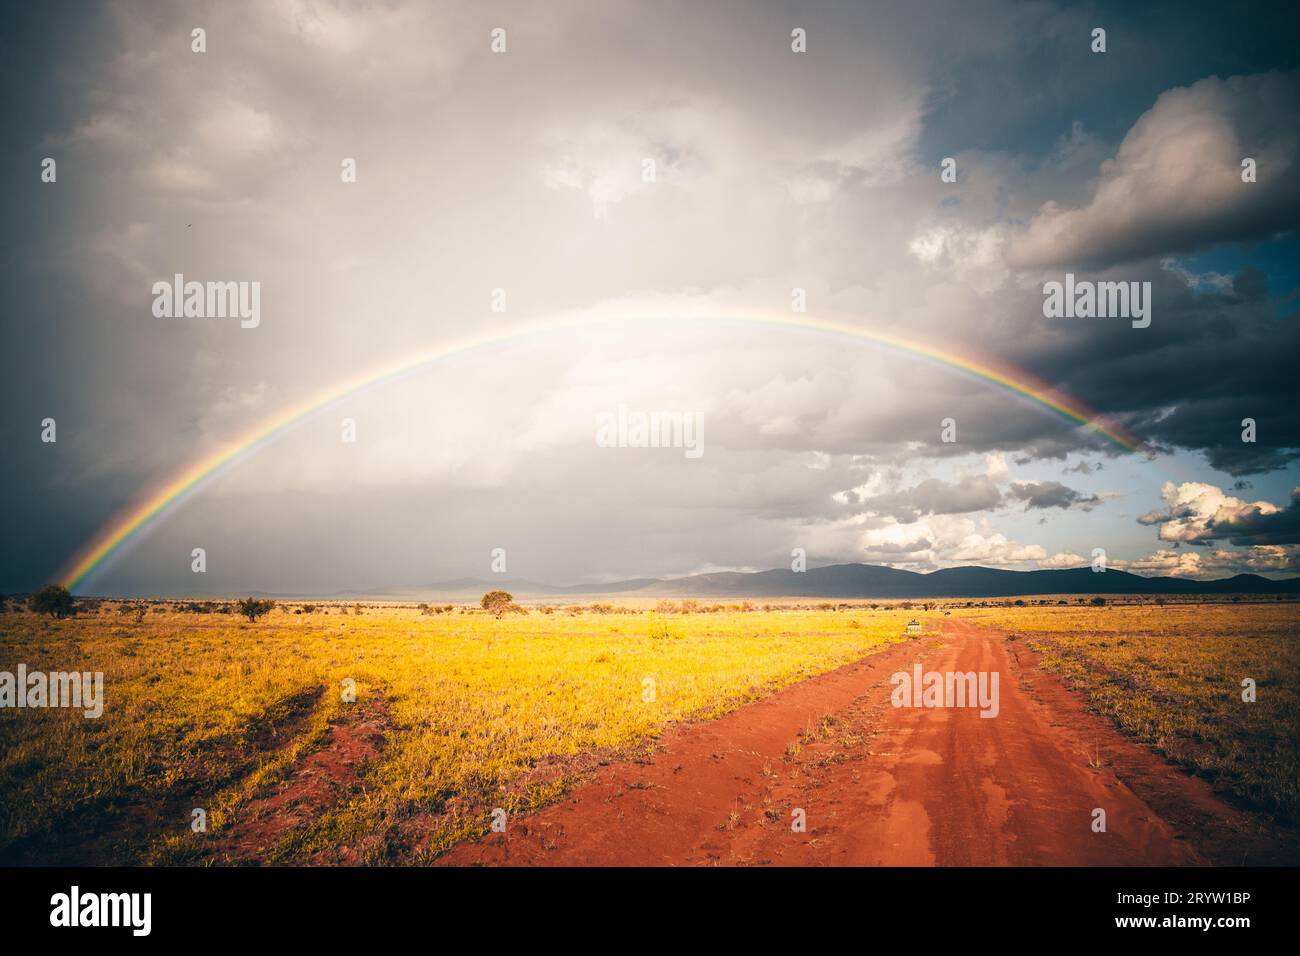 Regenzeit in der Savanne Kenias. Landschaft in Afrika, Sonne, Regen, Regenbogen, Safari-Fotografie. Stockfoto